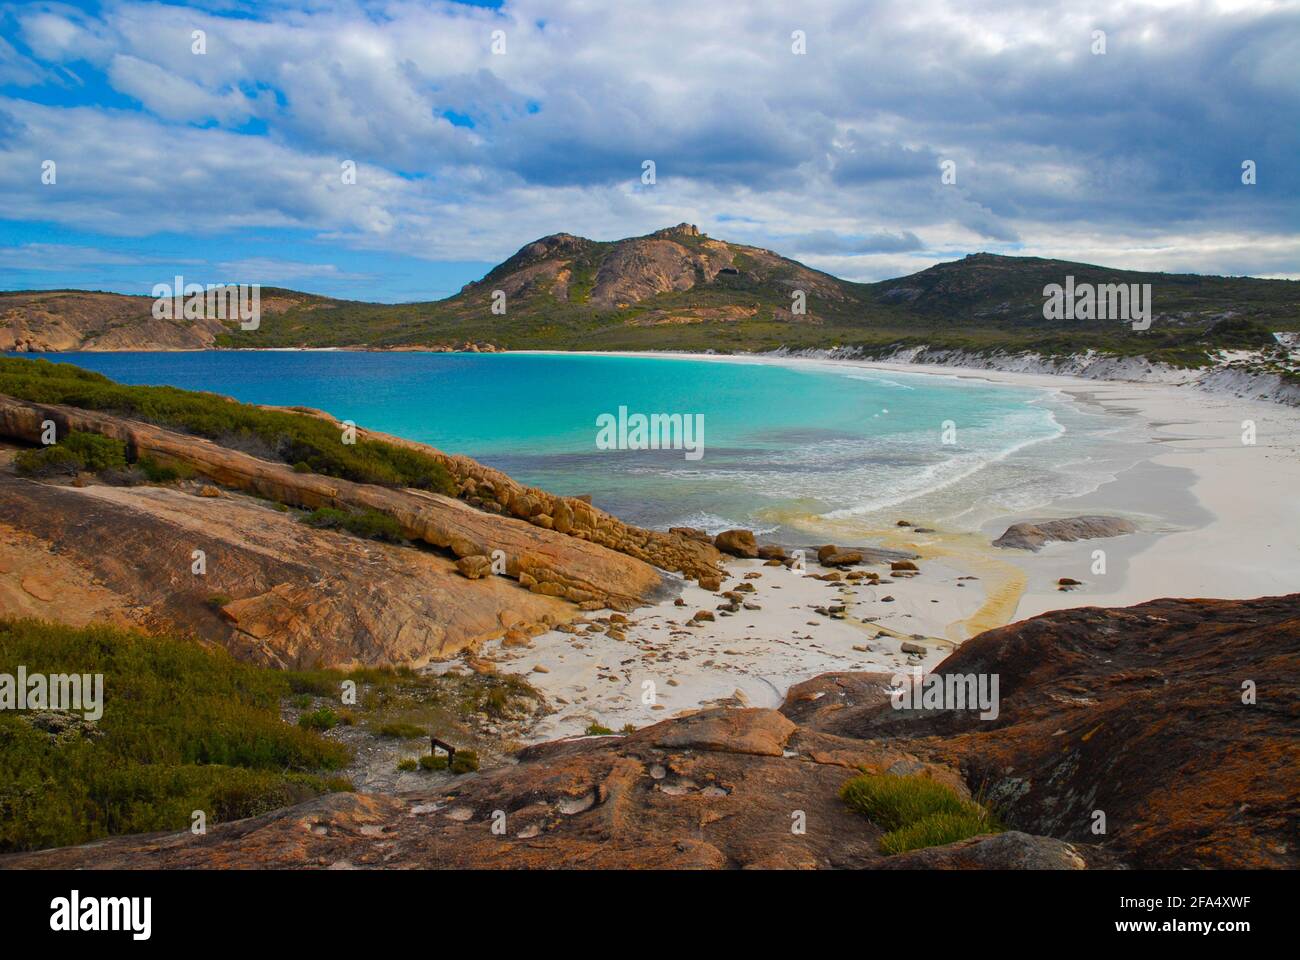 Belle plage et paysage côtier à Hellfire Bay, parc national de Cape le Grand, près d'Esperance, WA. Australie Banque D'Images